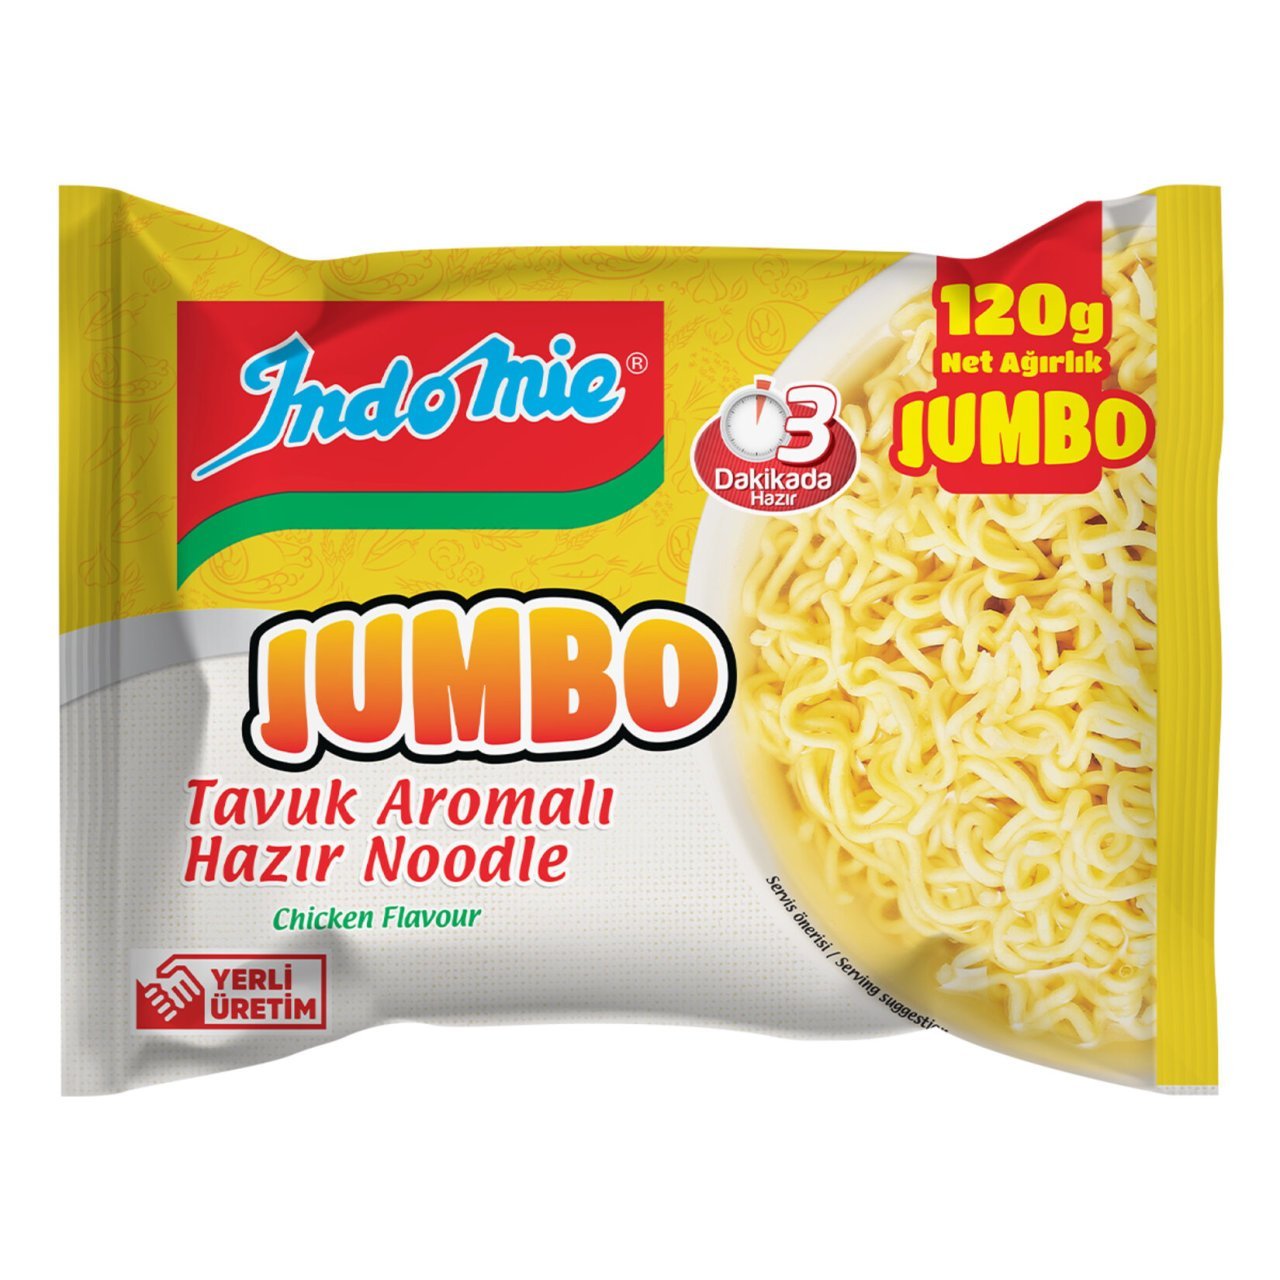 Indomie Jumbo Tavuk Aromalı Hazır Noodle 120gr